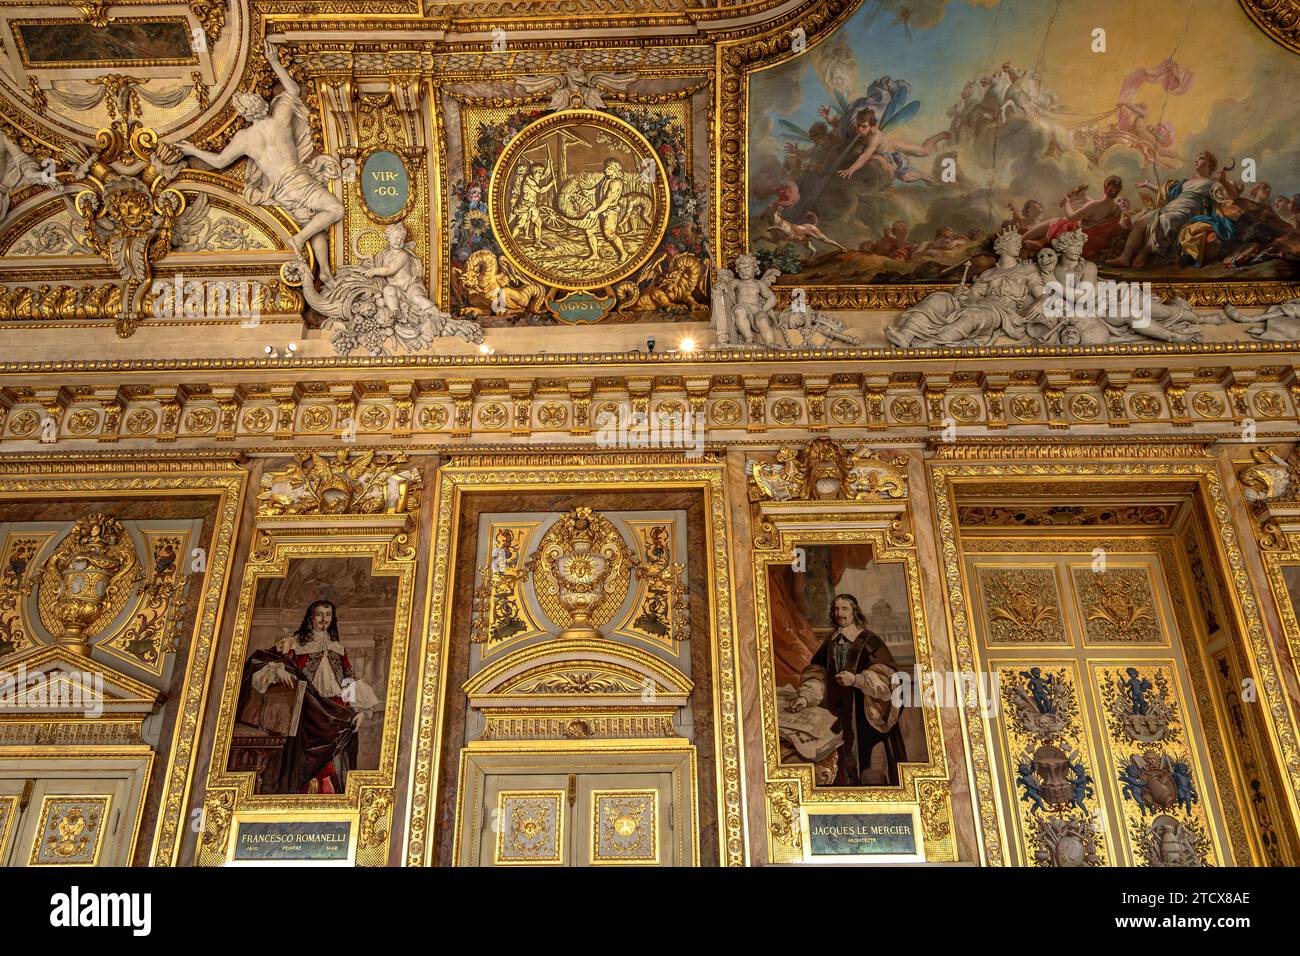 La superbe Galerie d'Apollon à l'intérieur du Musée du Louvre, les principales attractions de la galerie sont les pièces restantes des joyaux de la Couronne française, Paris Banque D'Images